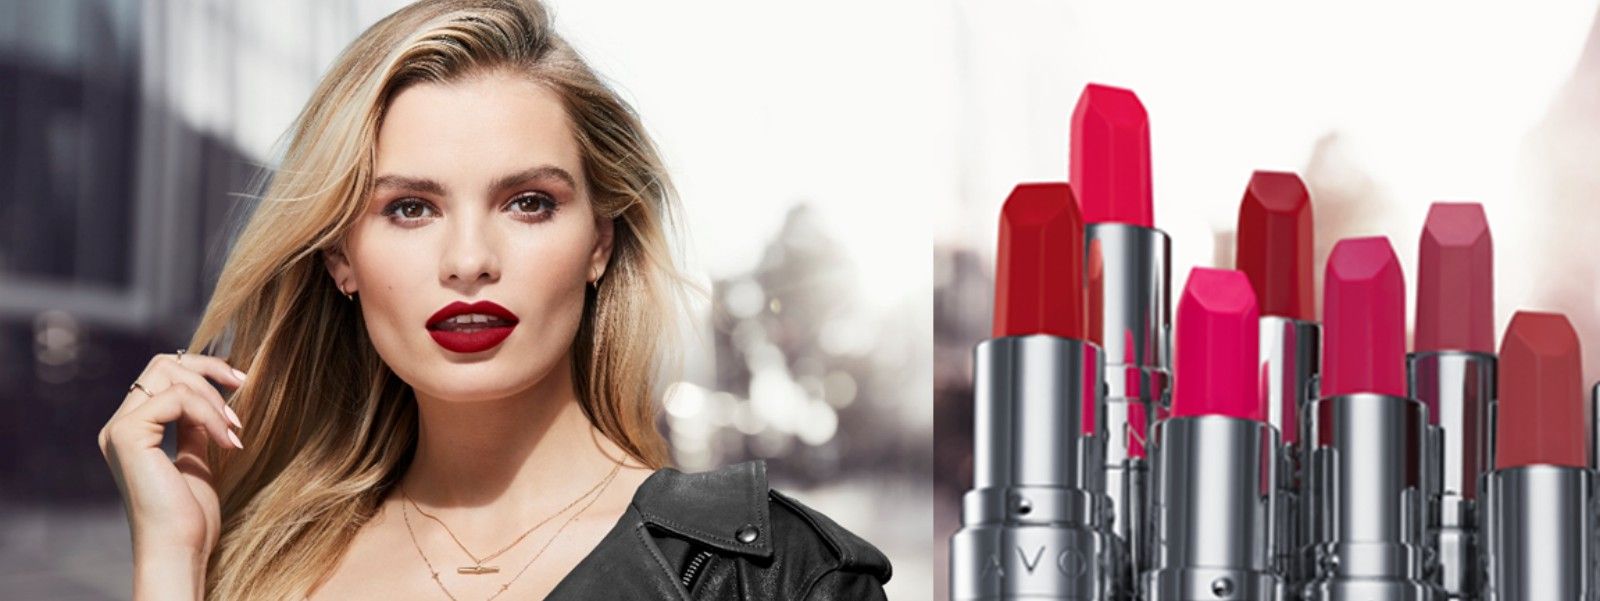 images easyblog articles 10214 Avon Matte Legend lipstick e49d7537